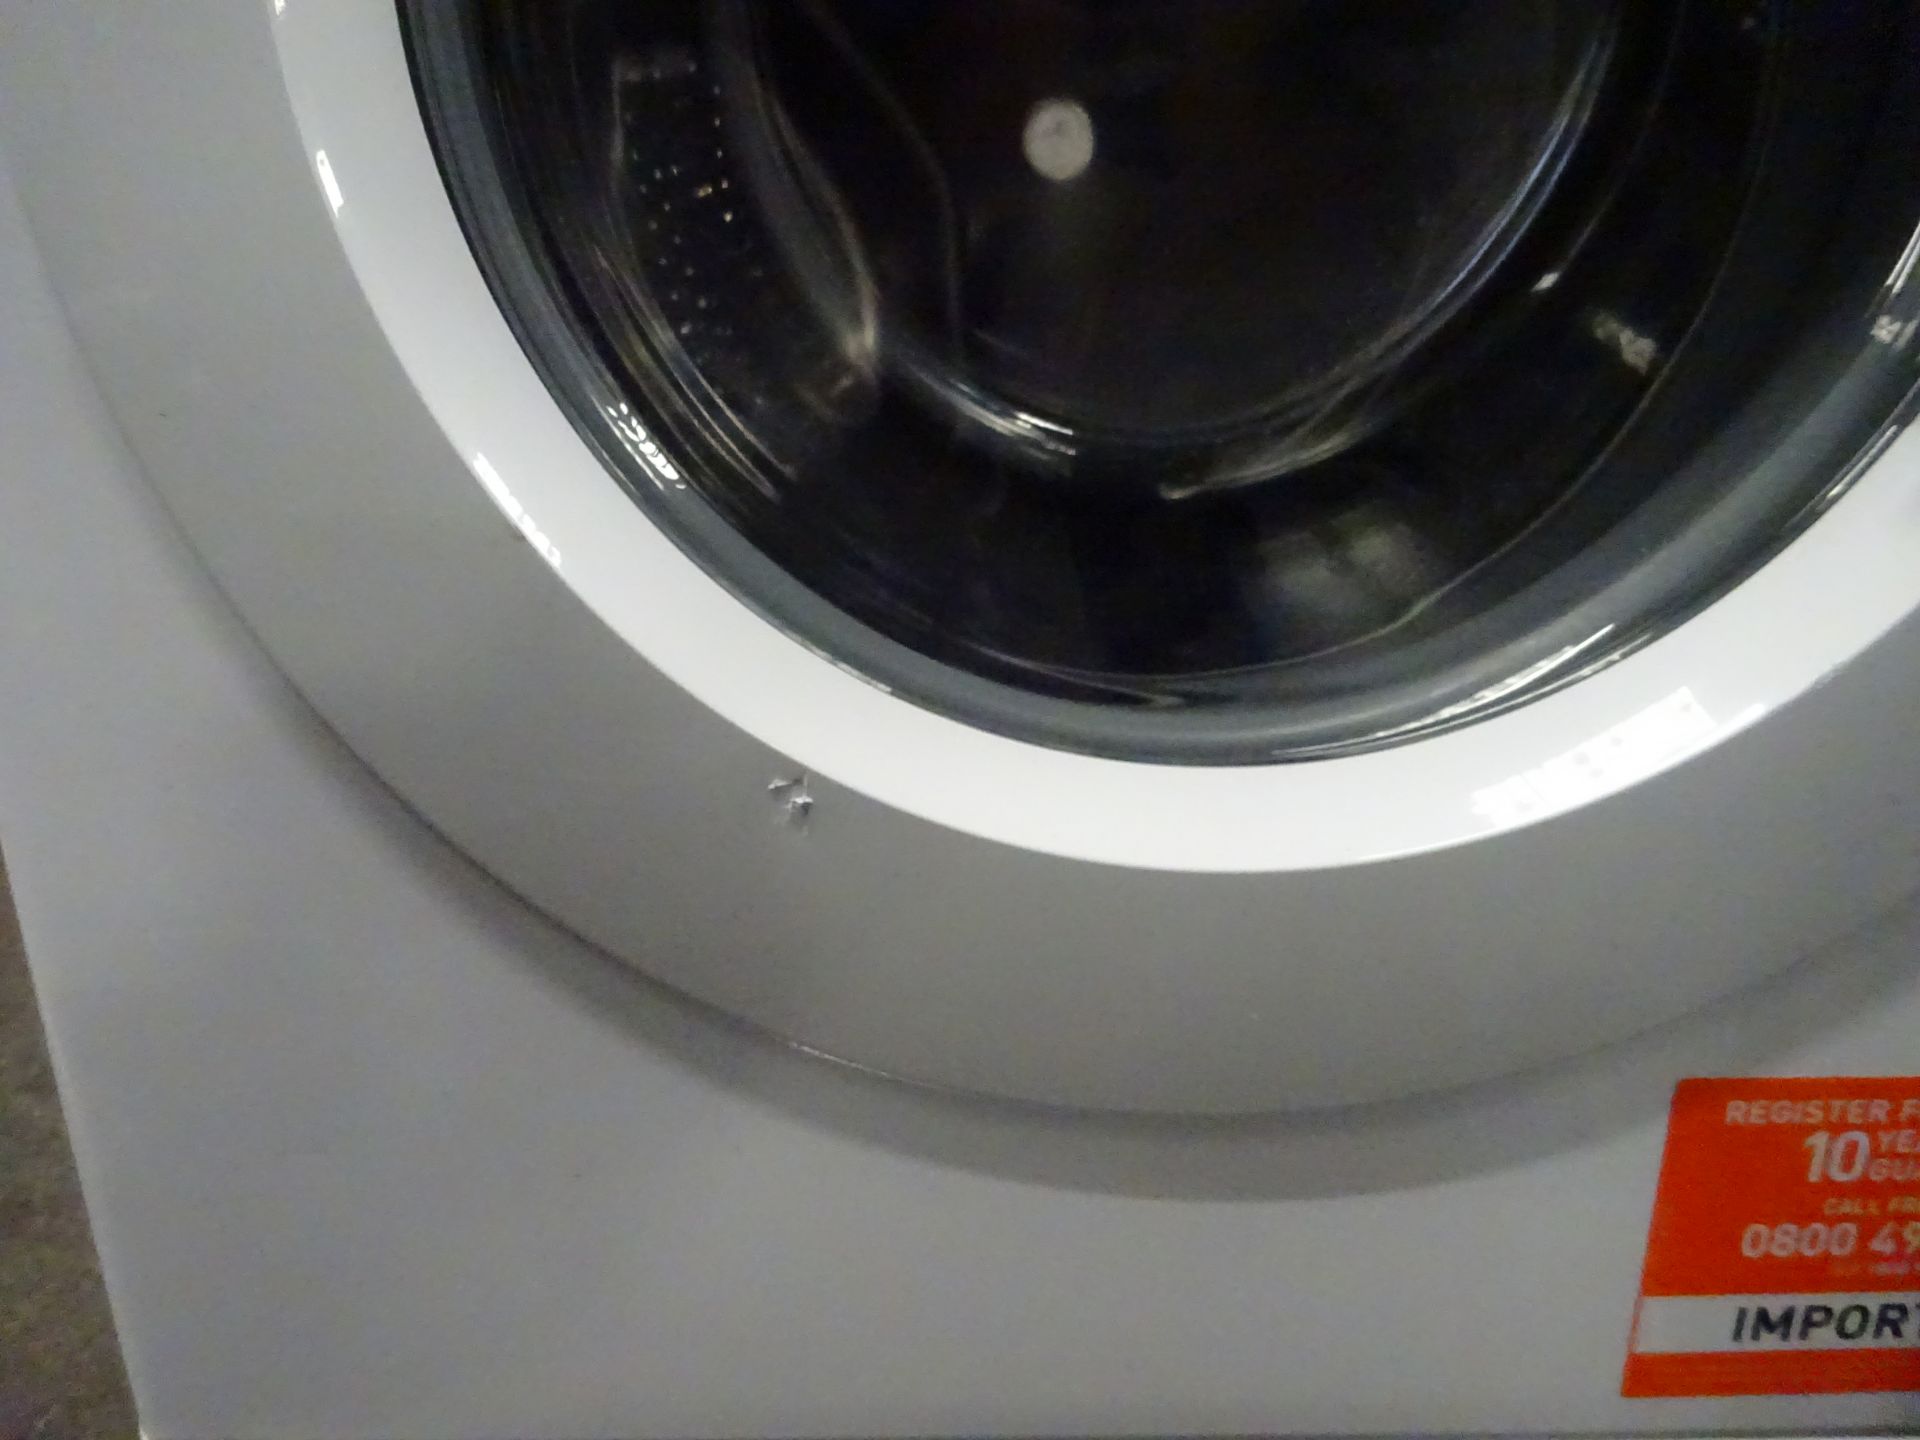 Indesit BWA81484XWUK 8KG 1400 Spin Washing Machine - White - ARGOS RRP £239.99 - Image 4 of 7